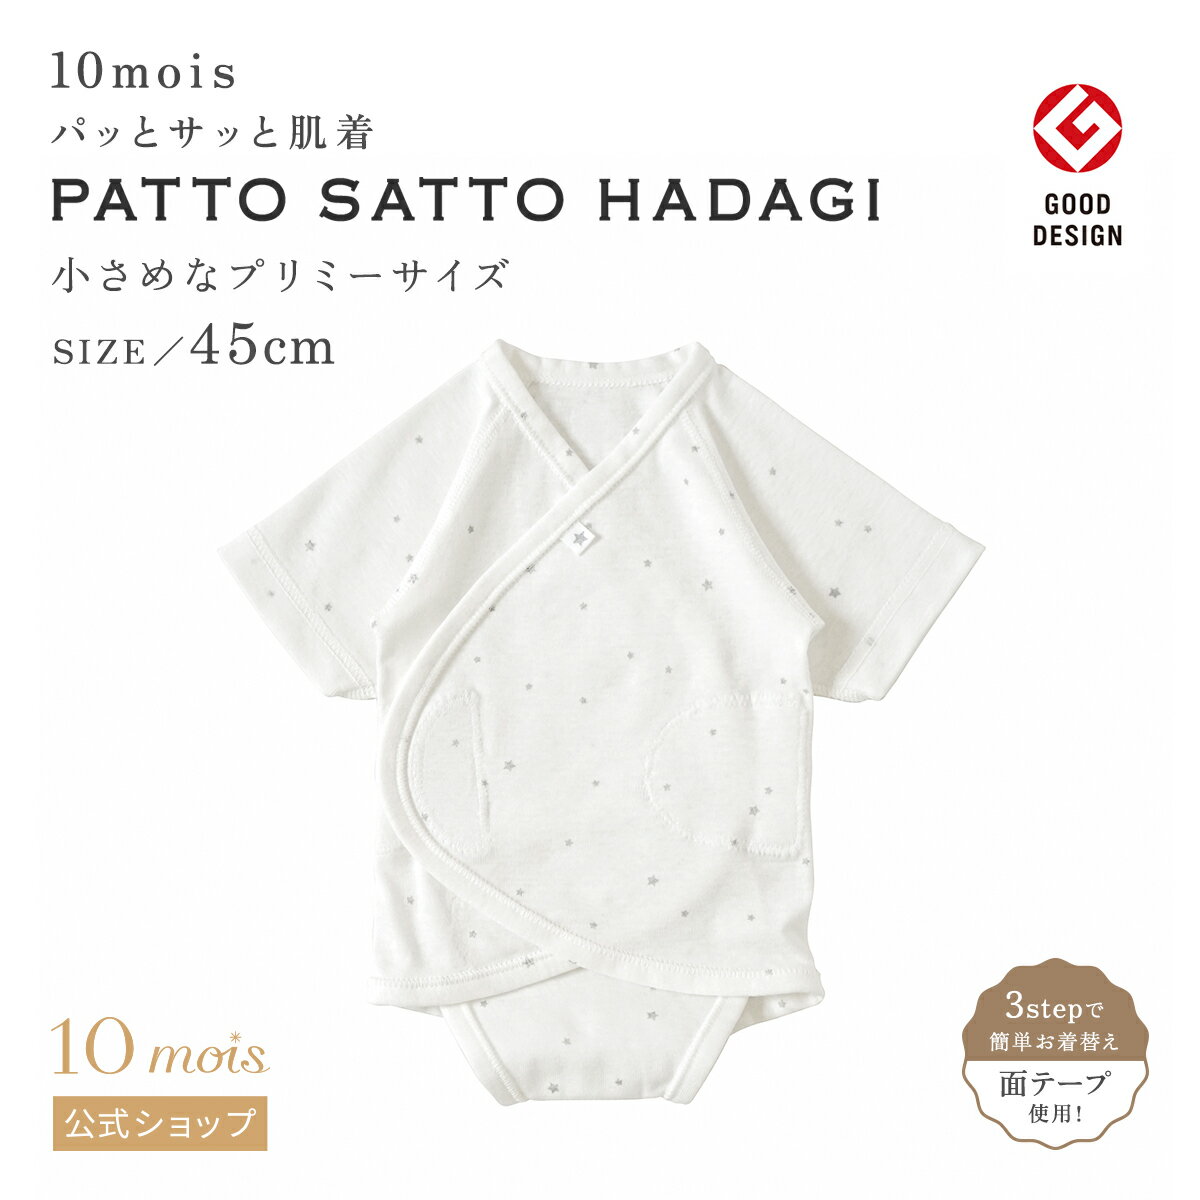 【公式】10mois ディモワ 簡単お着替え PATTO SATTO HADAGI ファインコットンホワイト プリミー 45cm [日本製 肌着 赤ちゃん ベビー 新生児 男の子 女の子 ベビー服 コットン100% シンプルなデ…